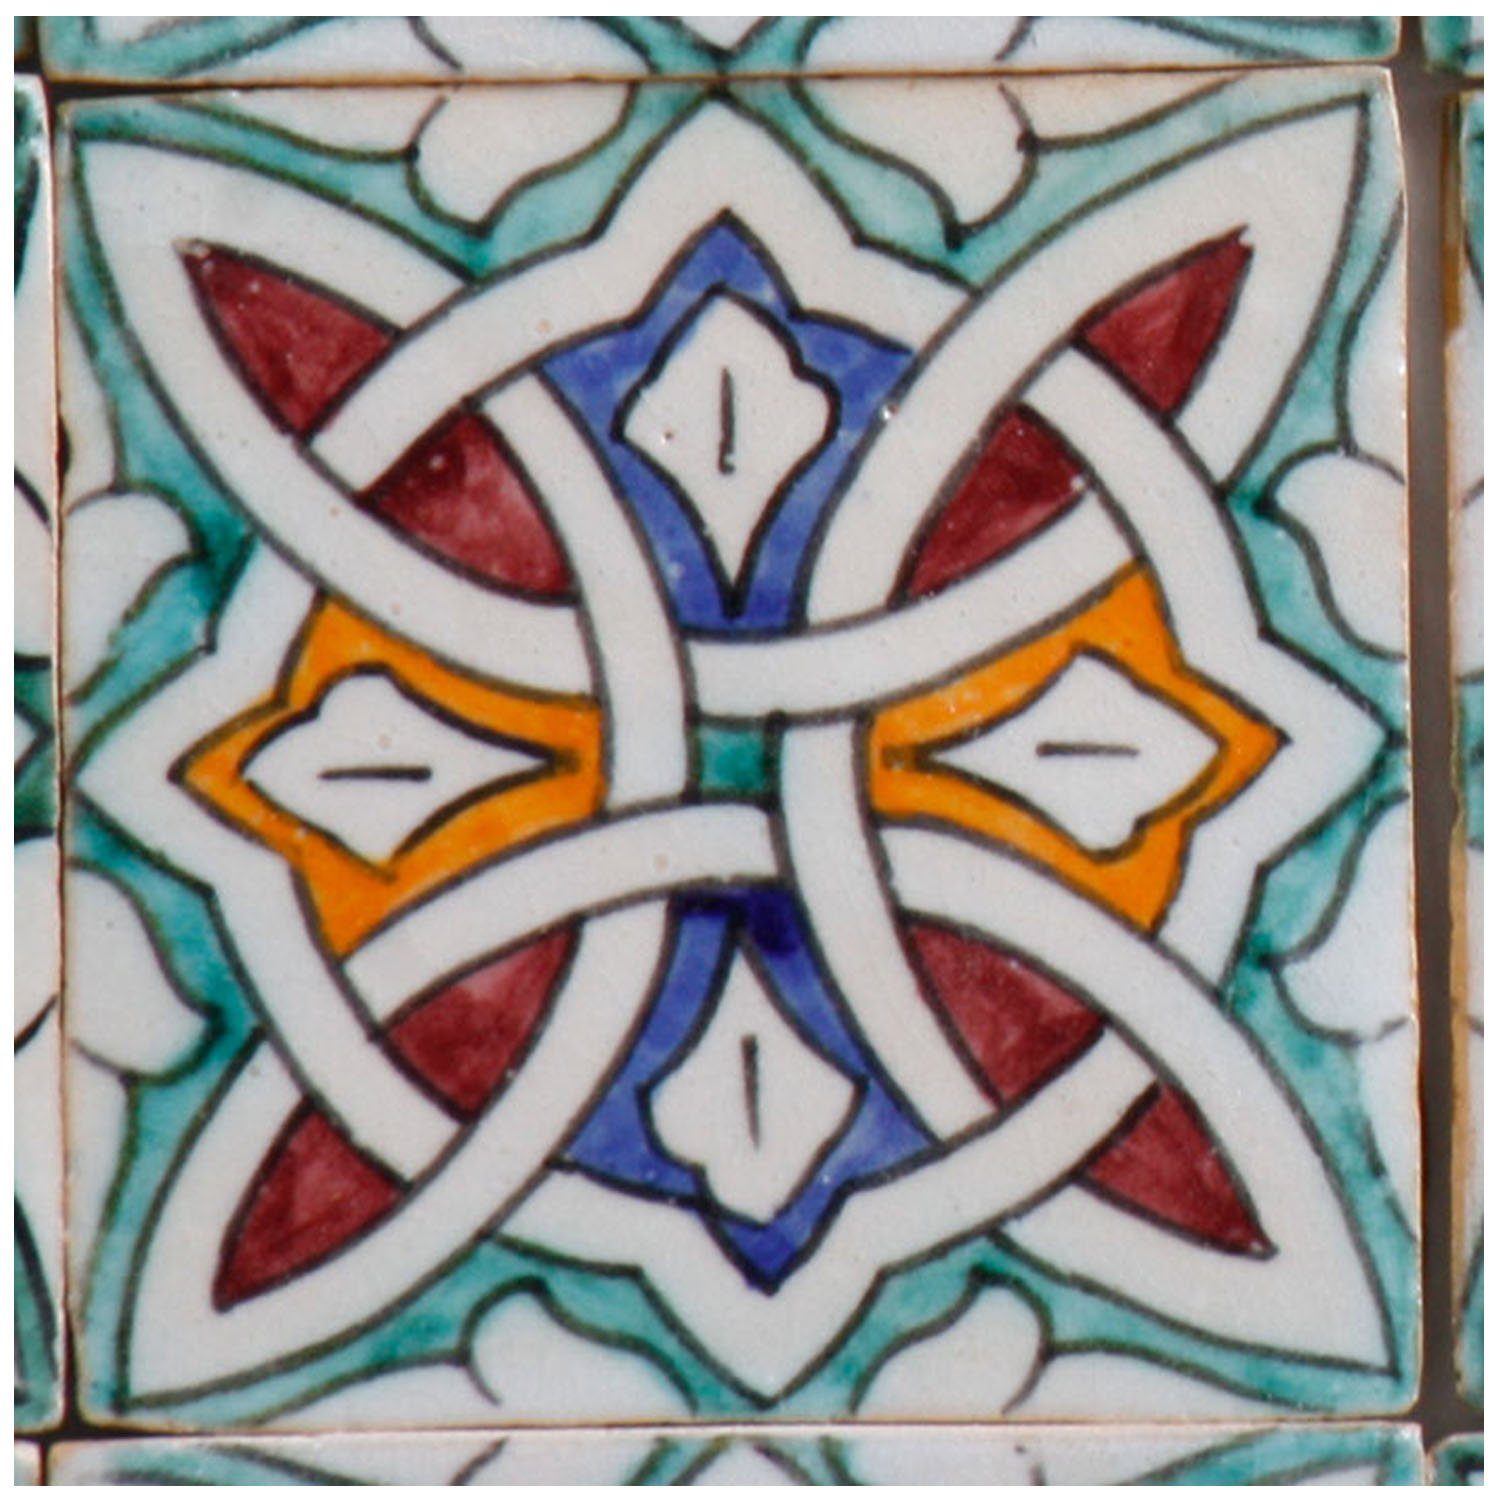 Casa Moro Keramik Wandfliese Casa Moro Marokkanische handbemalte Keramikfliese Layla, Mehrfarbig, 10 x 10 cm, Kunsthandwerk aus Marokko, Wandfliese für schöne Küche Dusche Badezimmer